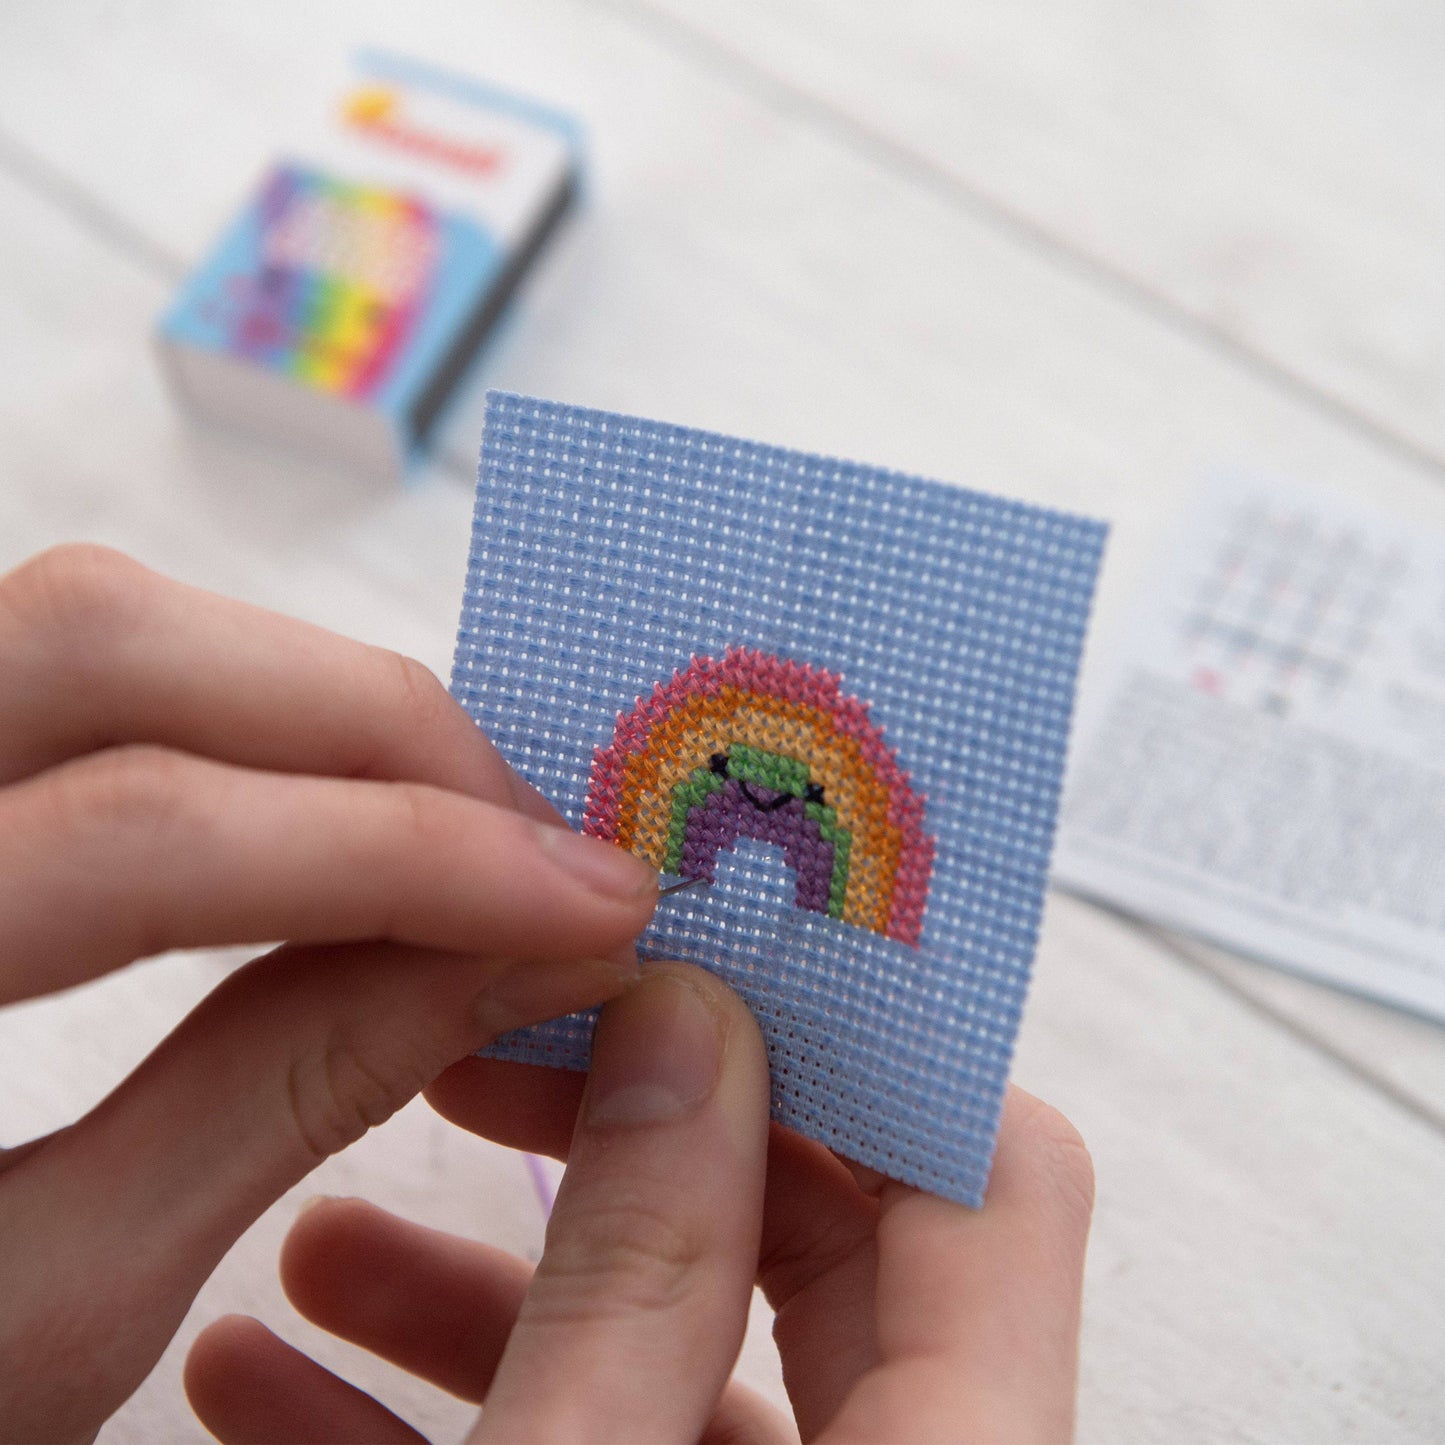 Kawaii Rainbow Arc  Mini Cross Stitch Kit  In A Matchbox